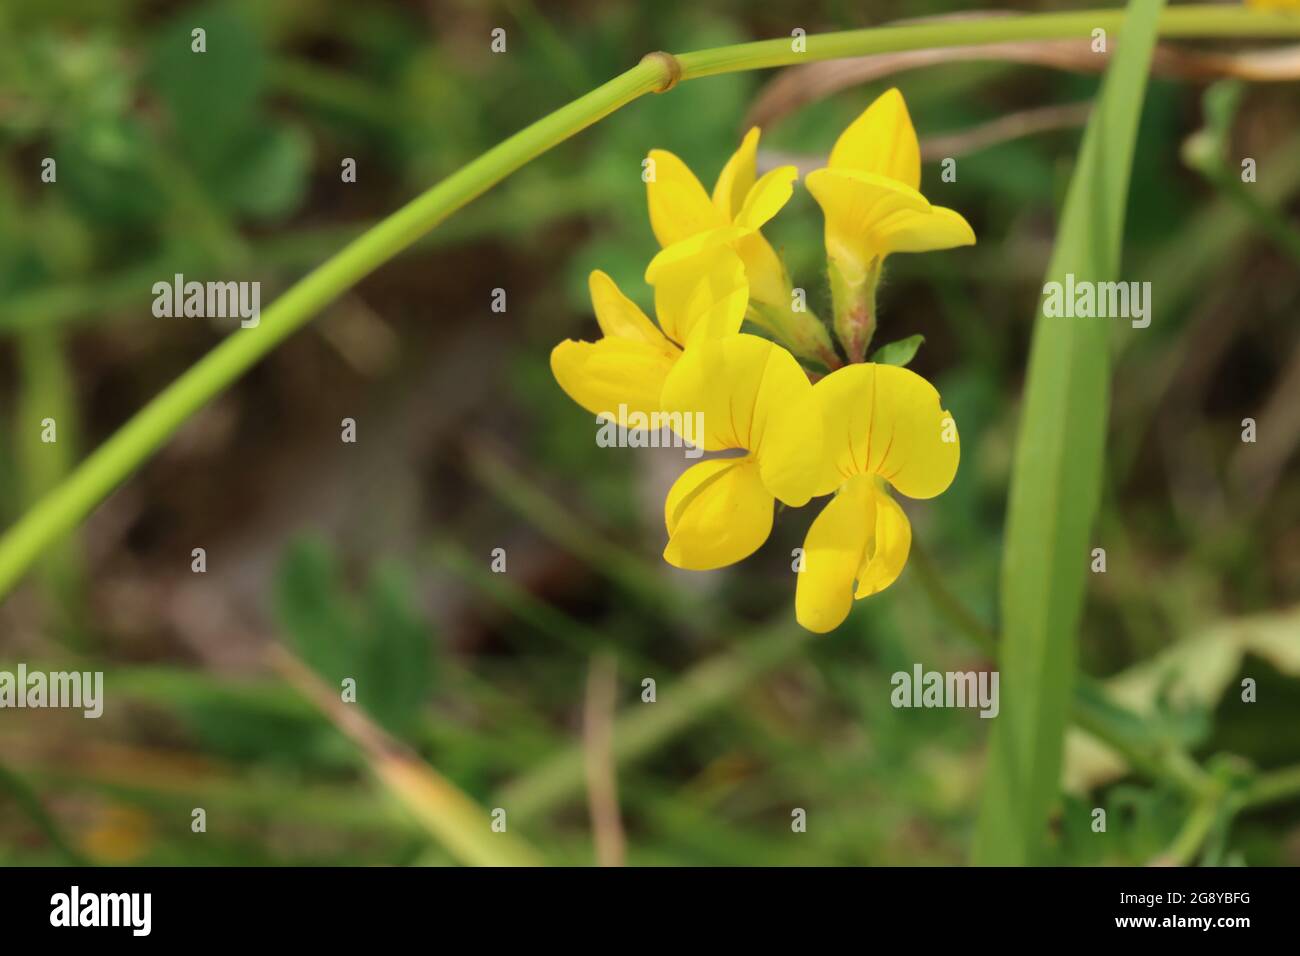 Nahaufnahme von der gelben Blüte des gewöhnlichen Hornklees Stock Photo